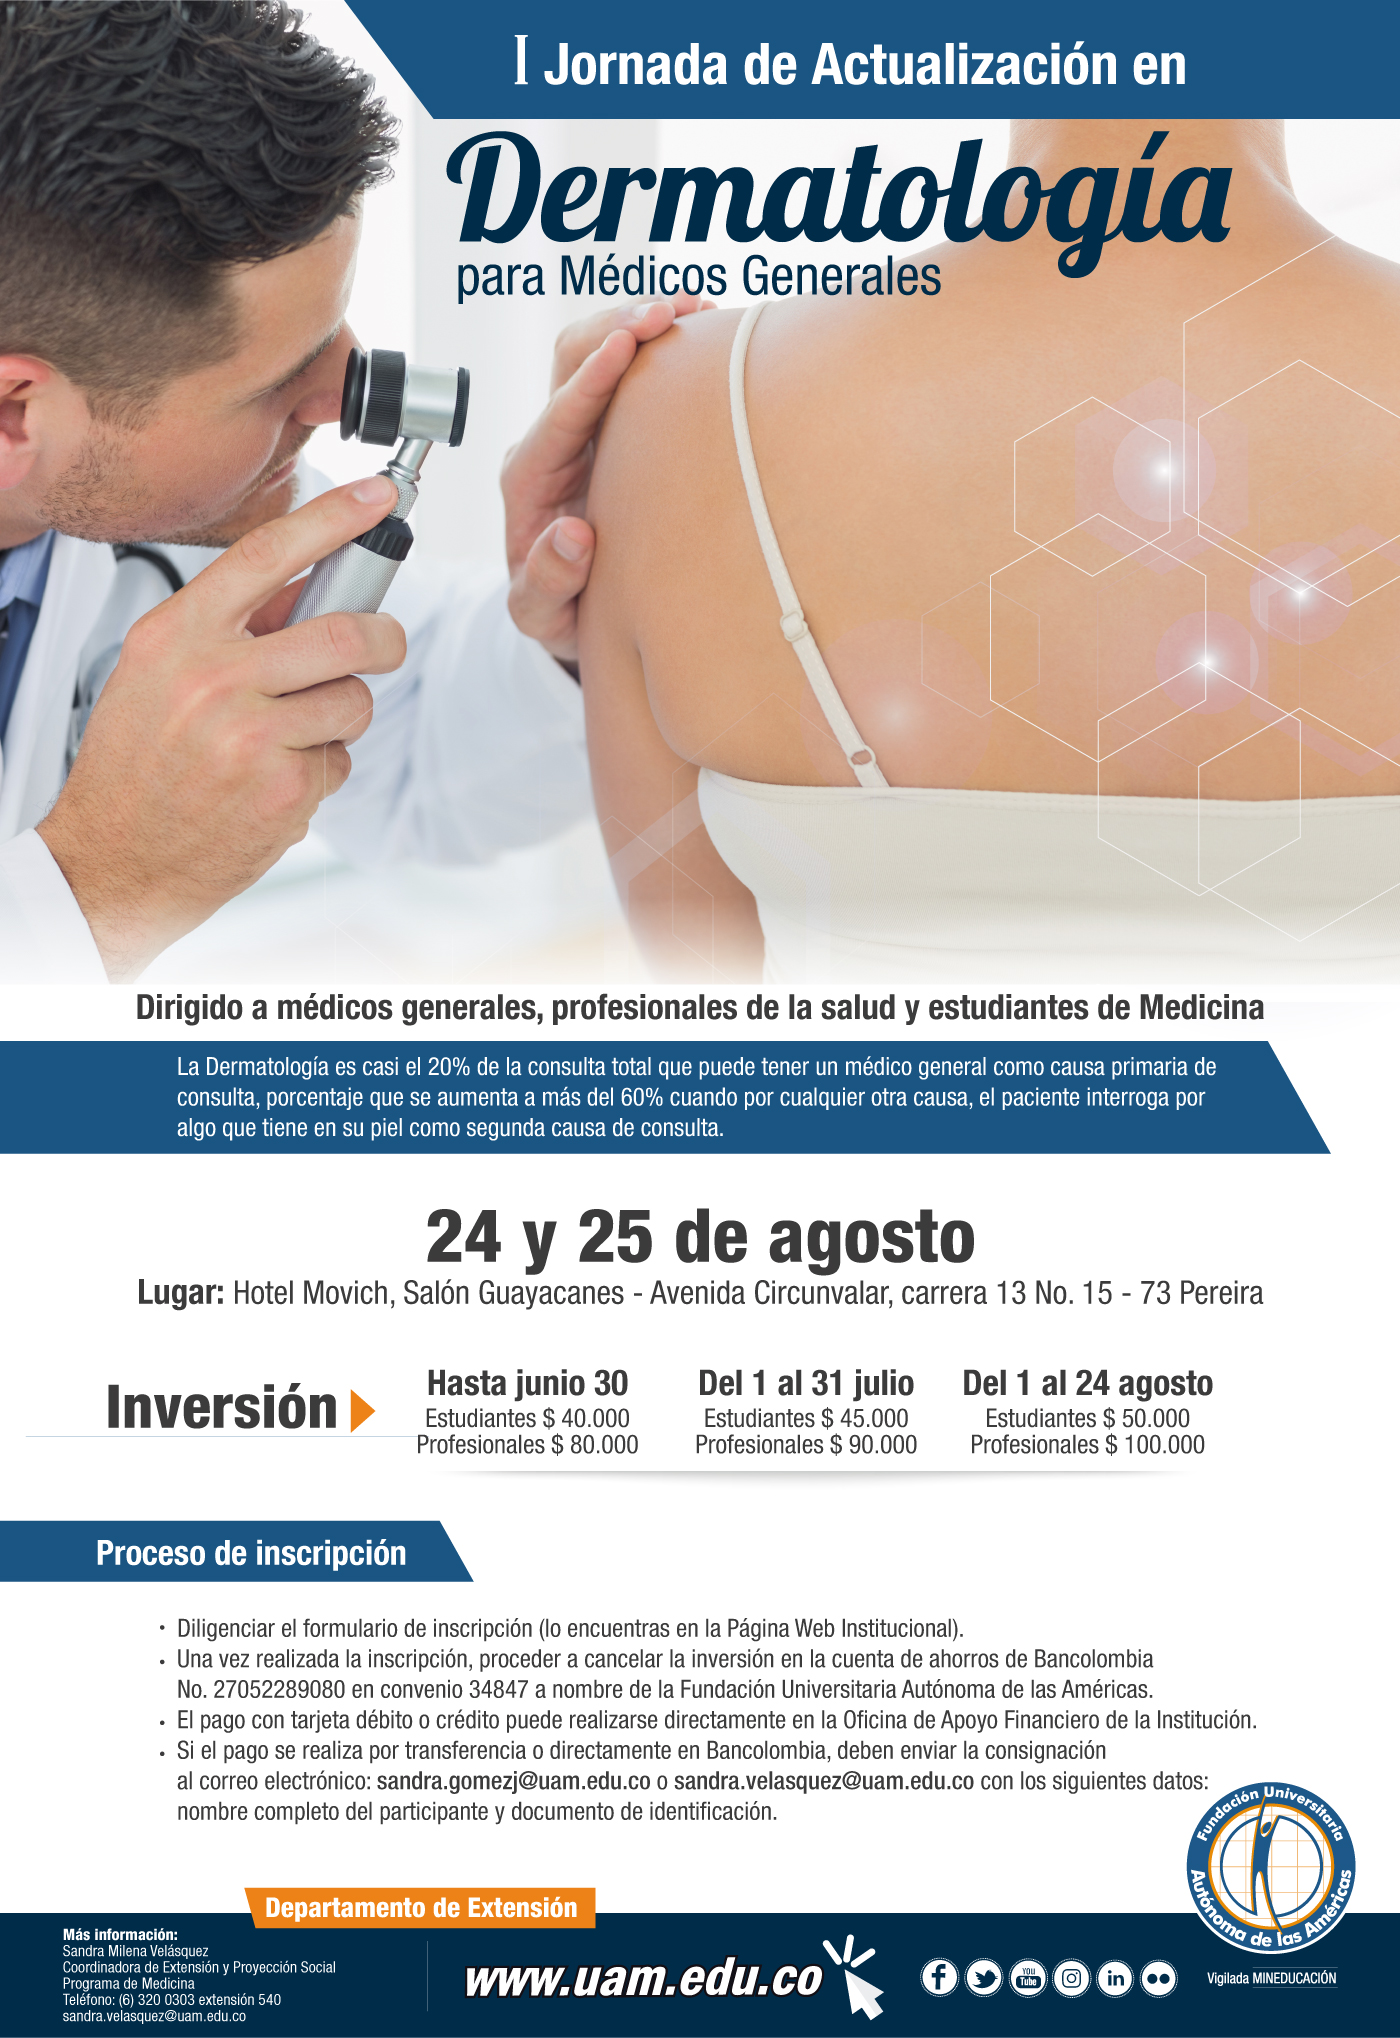 I Congreso De Dermatologia Pauta Afiche